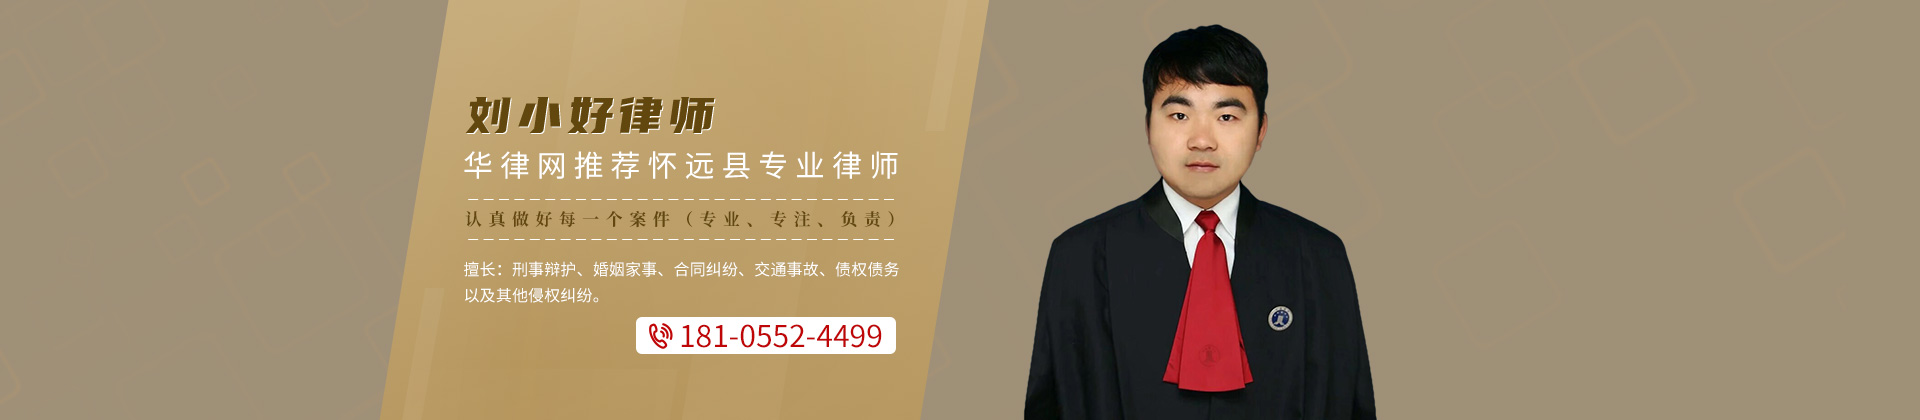 安徽蚌埠律师-刘小好律师